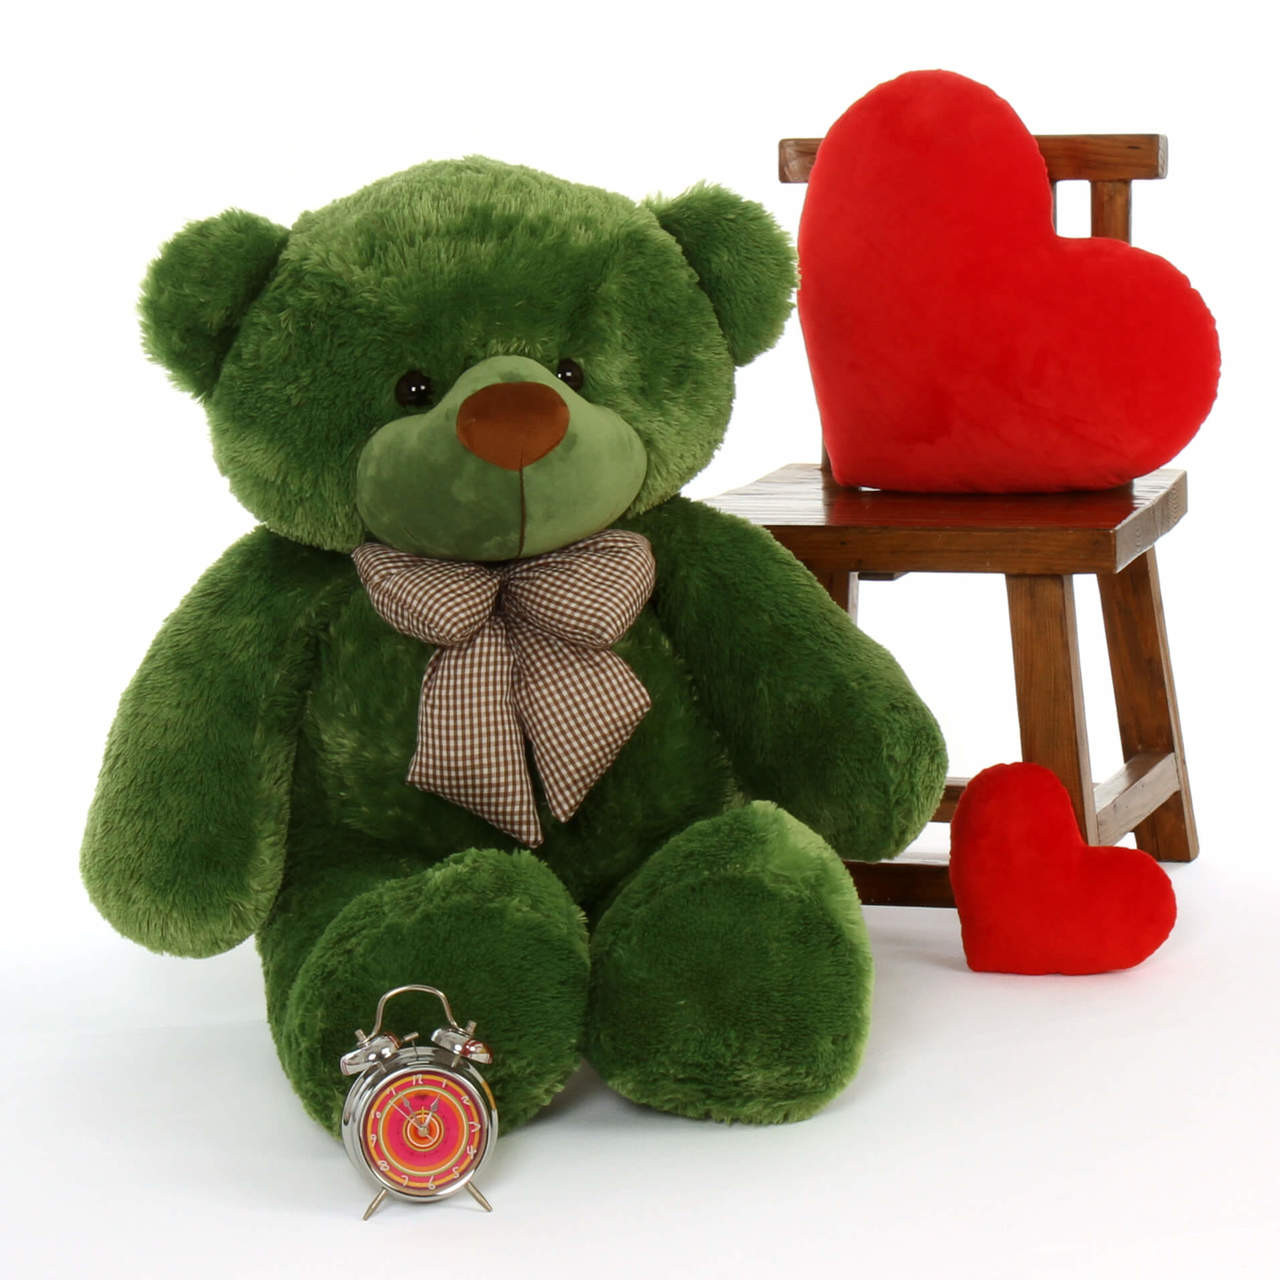 green teddy bear with love